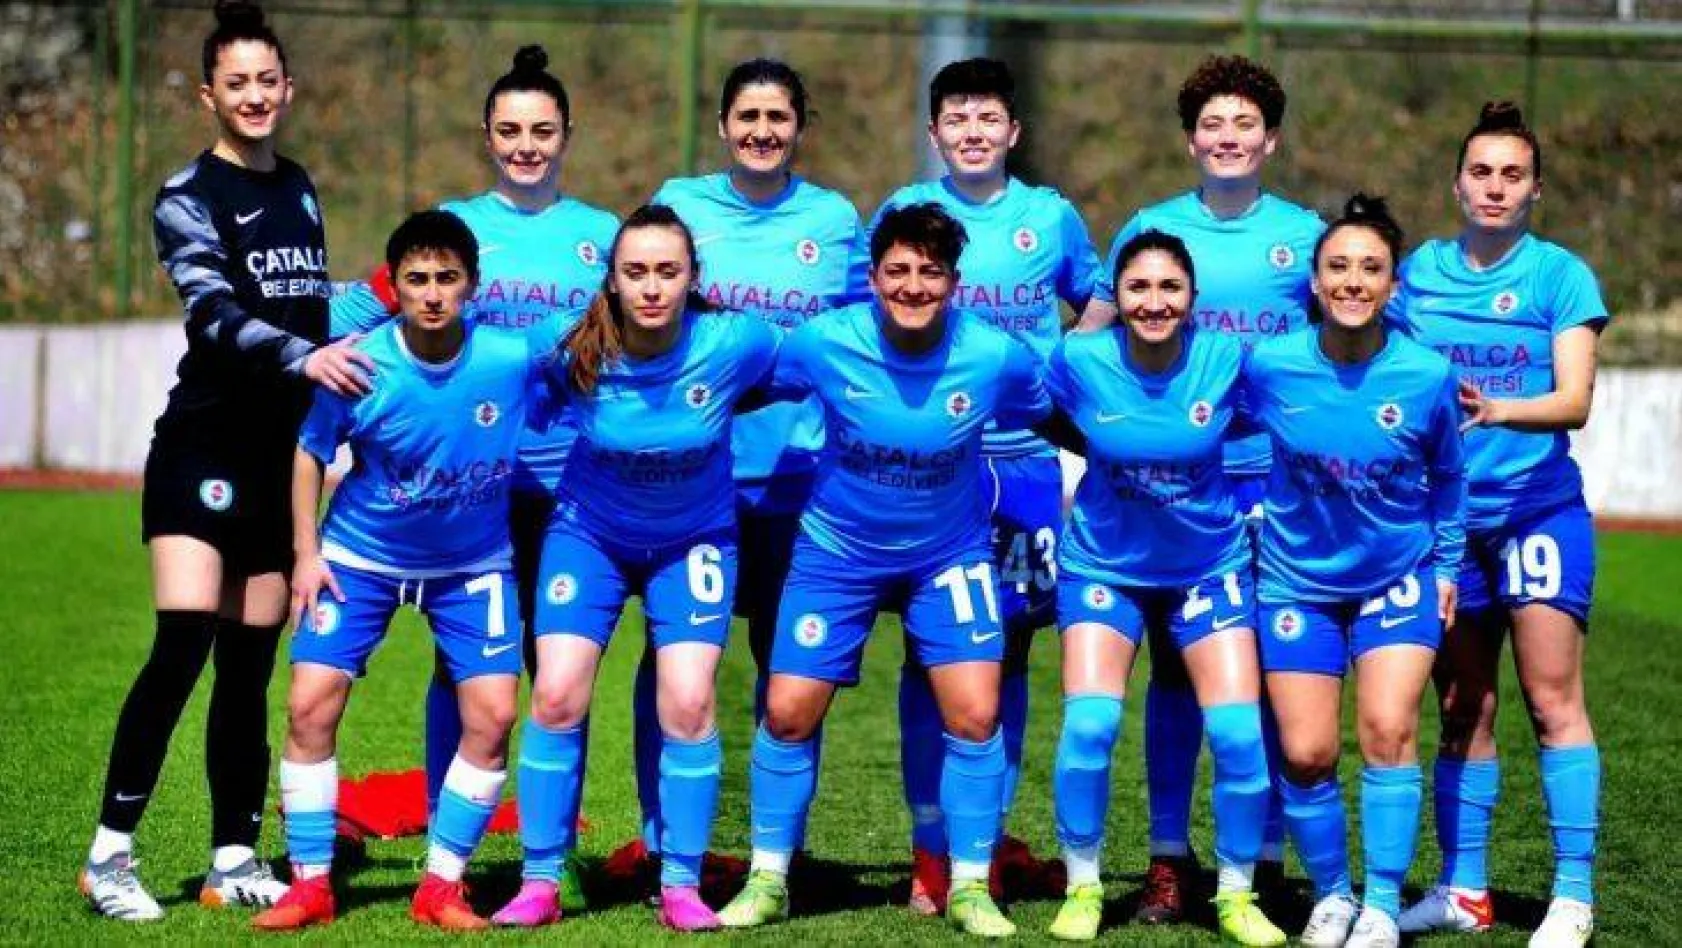 Çatalca'nın Kızları, Kayseri'de Yol'unu buldu: 7-0